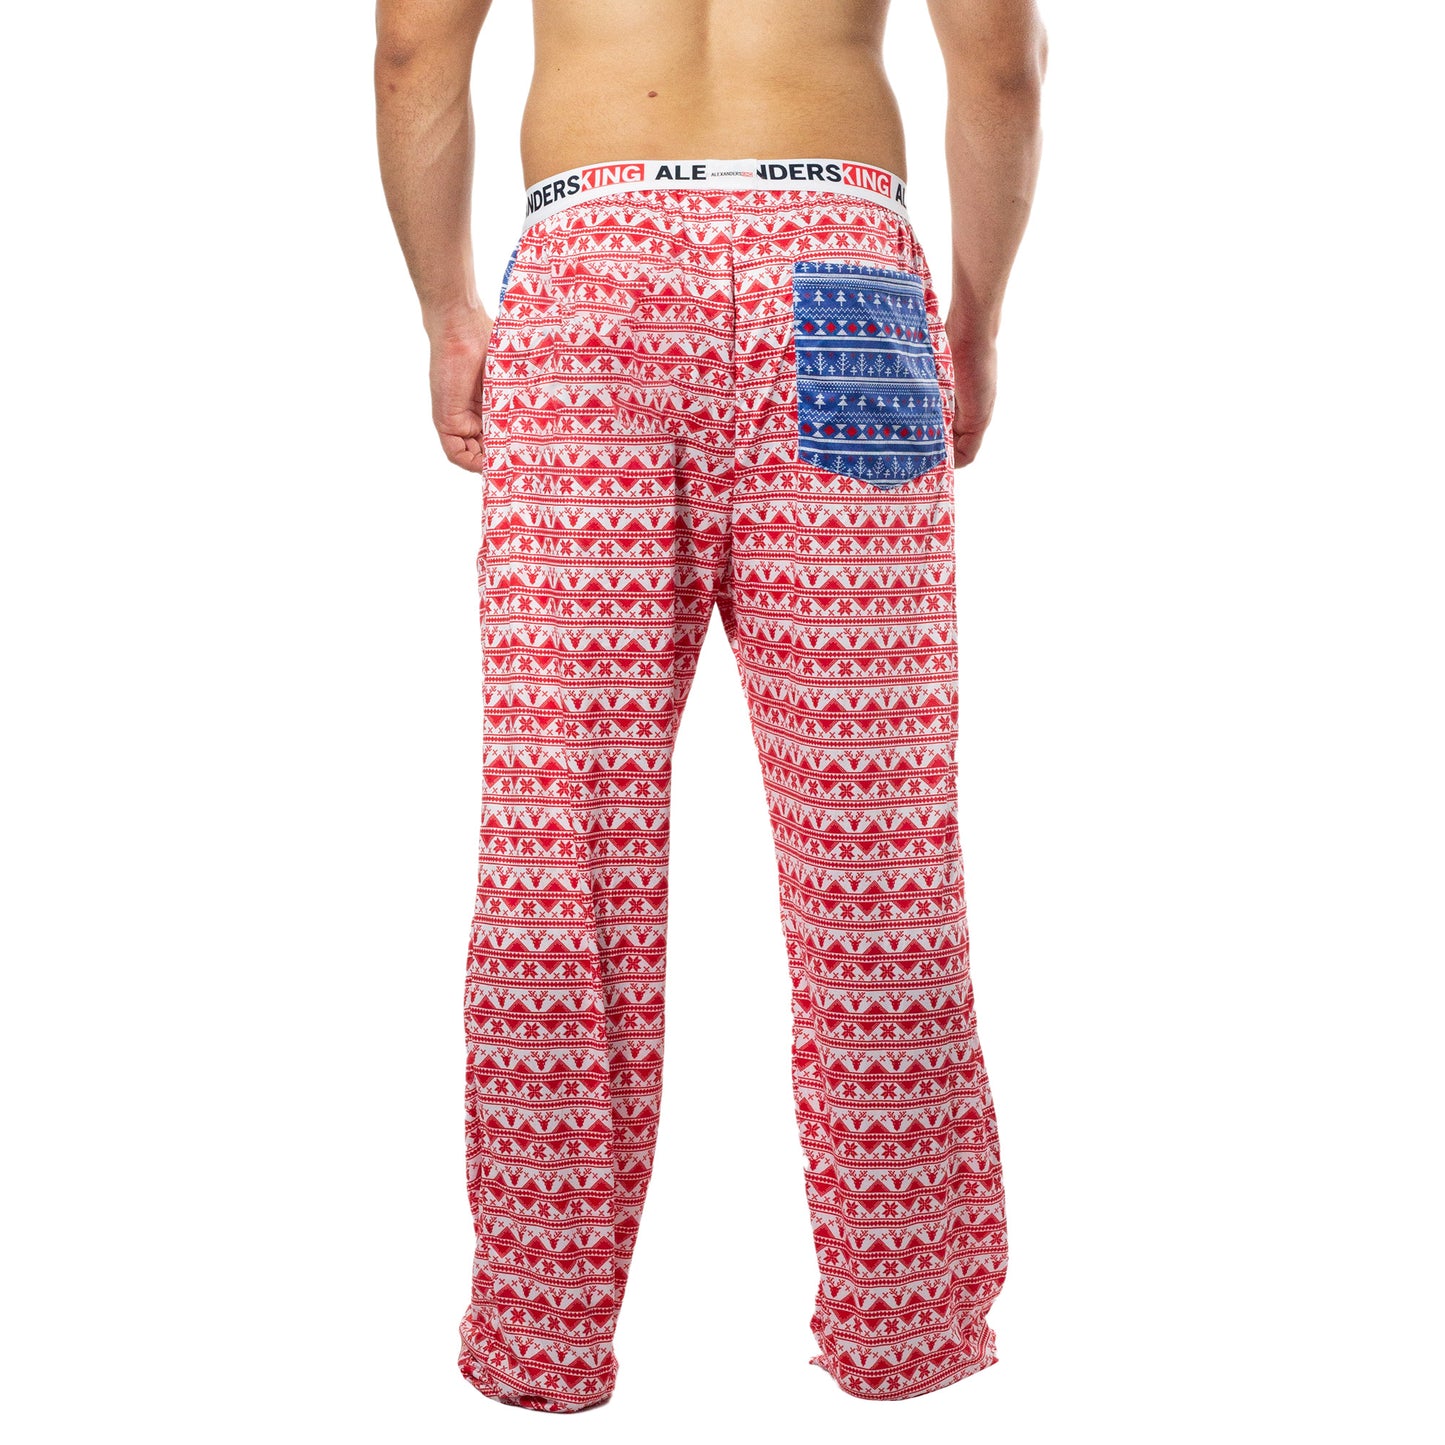 PJ0003 Pantalon Pijama Renos Navide̱os sublimado de renos rojos en fondo blanco fondo blanco